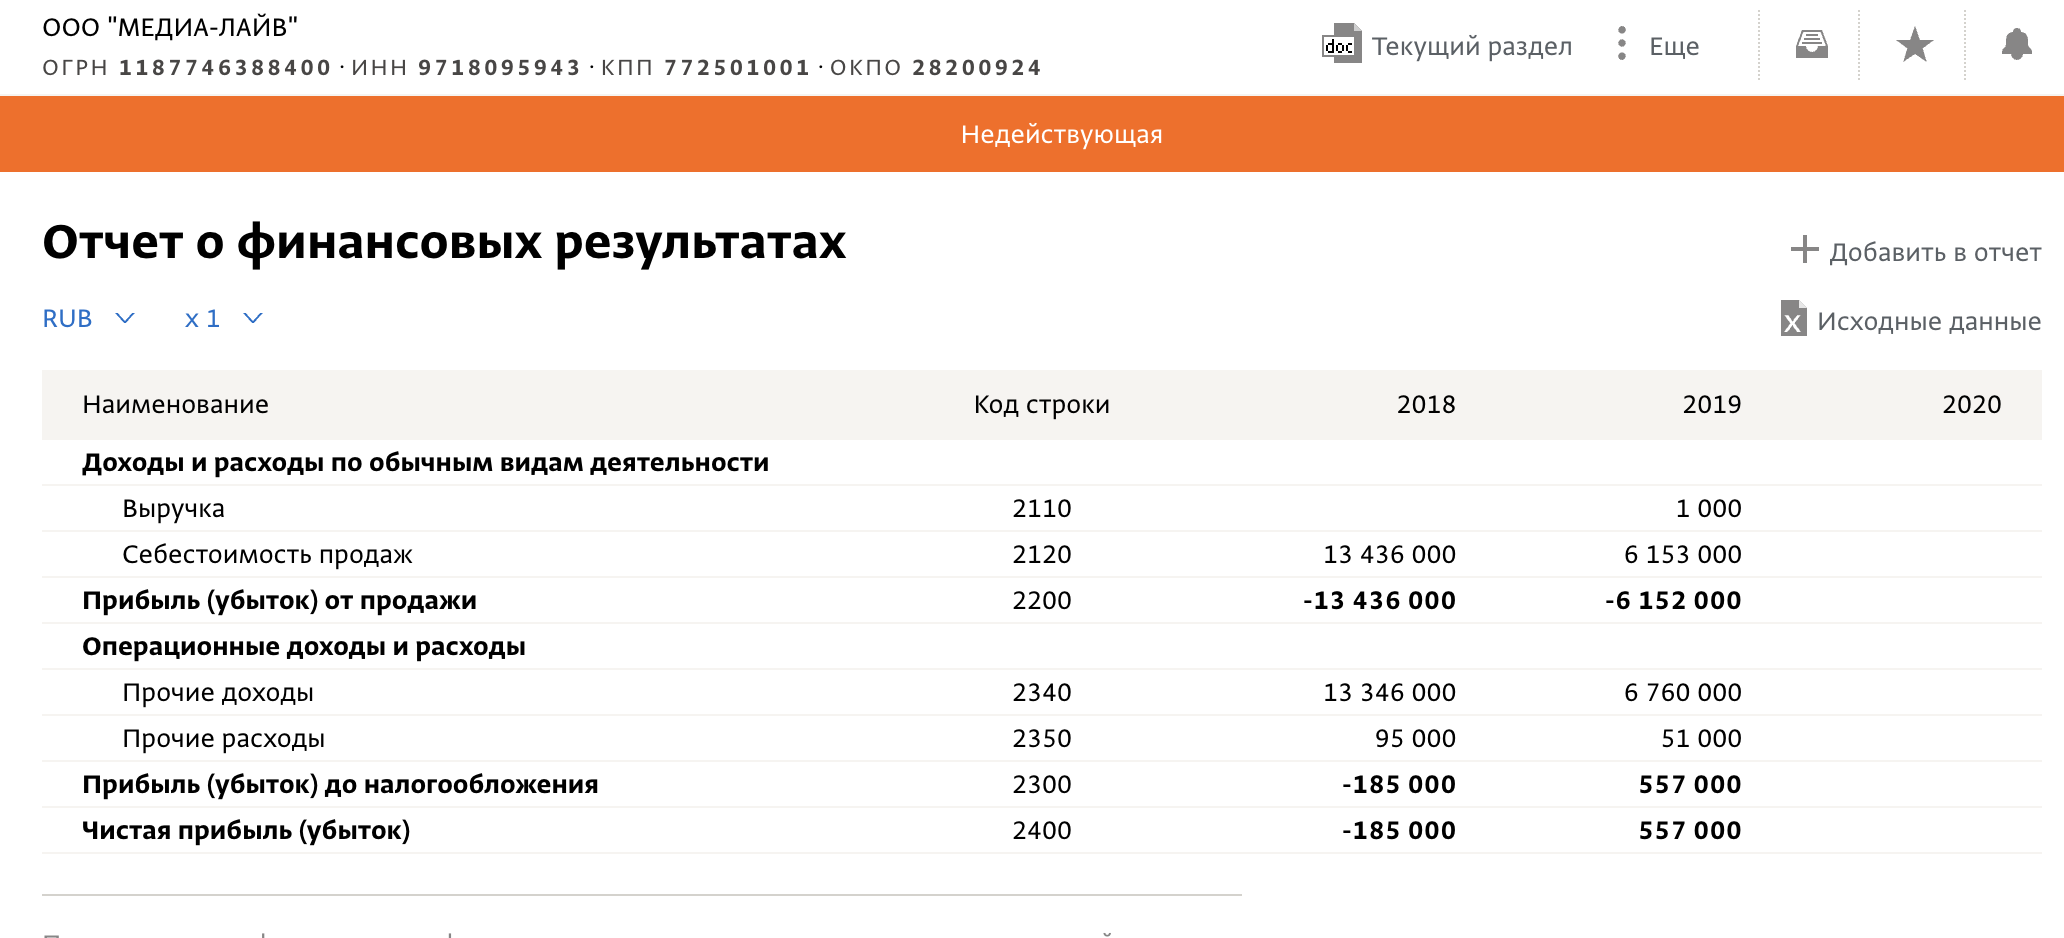 За первые два года работы фирма успела сменить название с "Левиафан-медиахолдинг" на "Медиа-лайв", а также освоить около 20 млн рублей. Следующие два года — вплоть до закрытия — на её балансе не появлялось более пары сотен тысяч. Скриншот © spark-interfax.ru